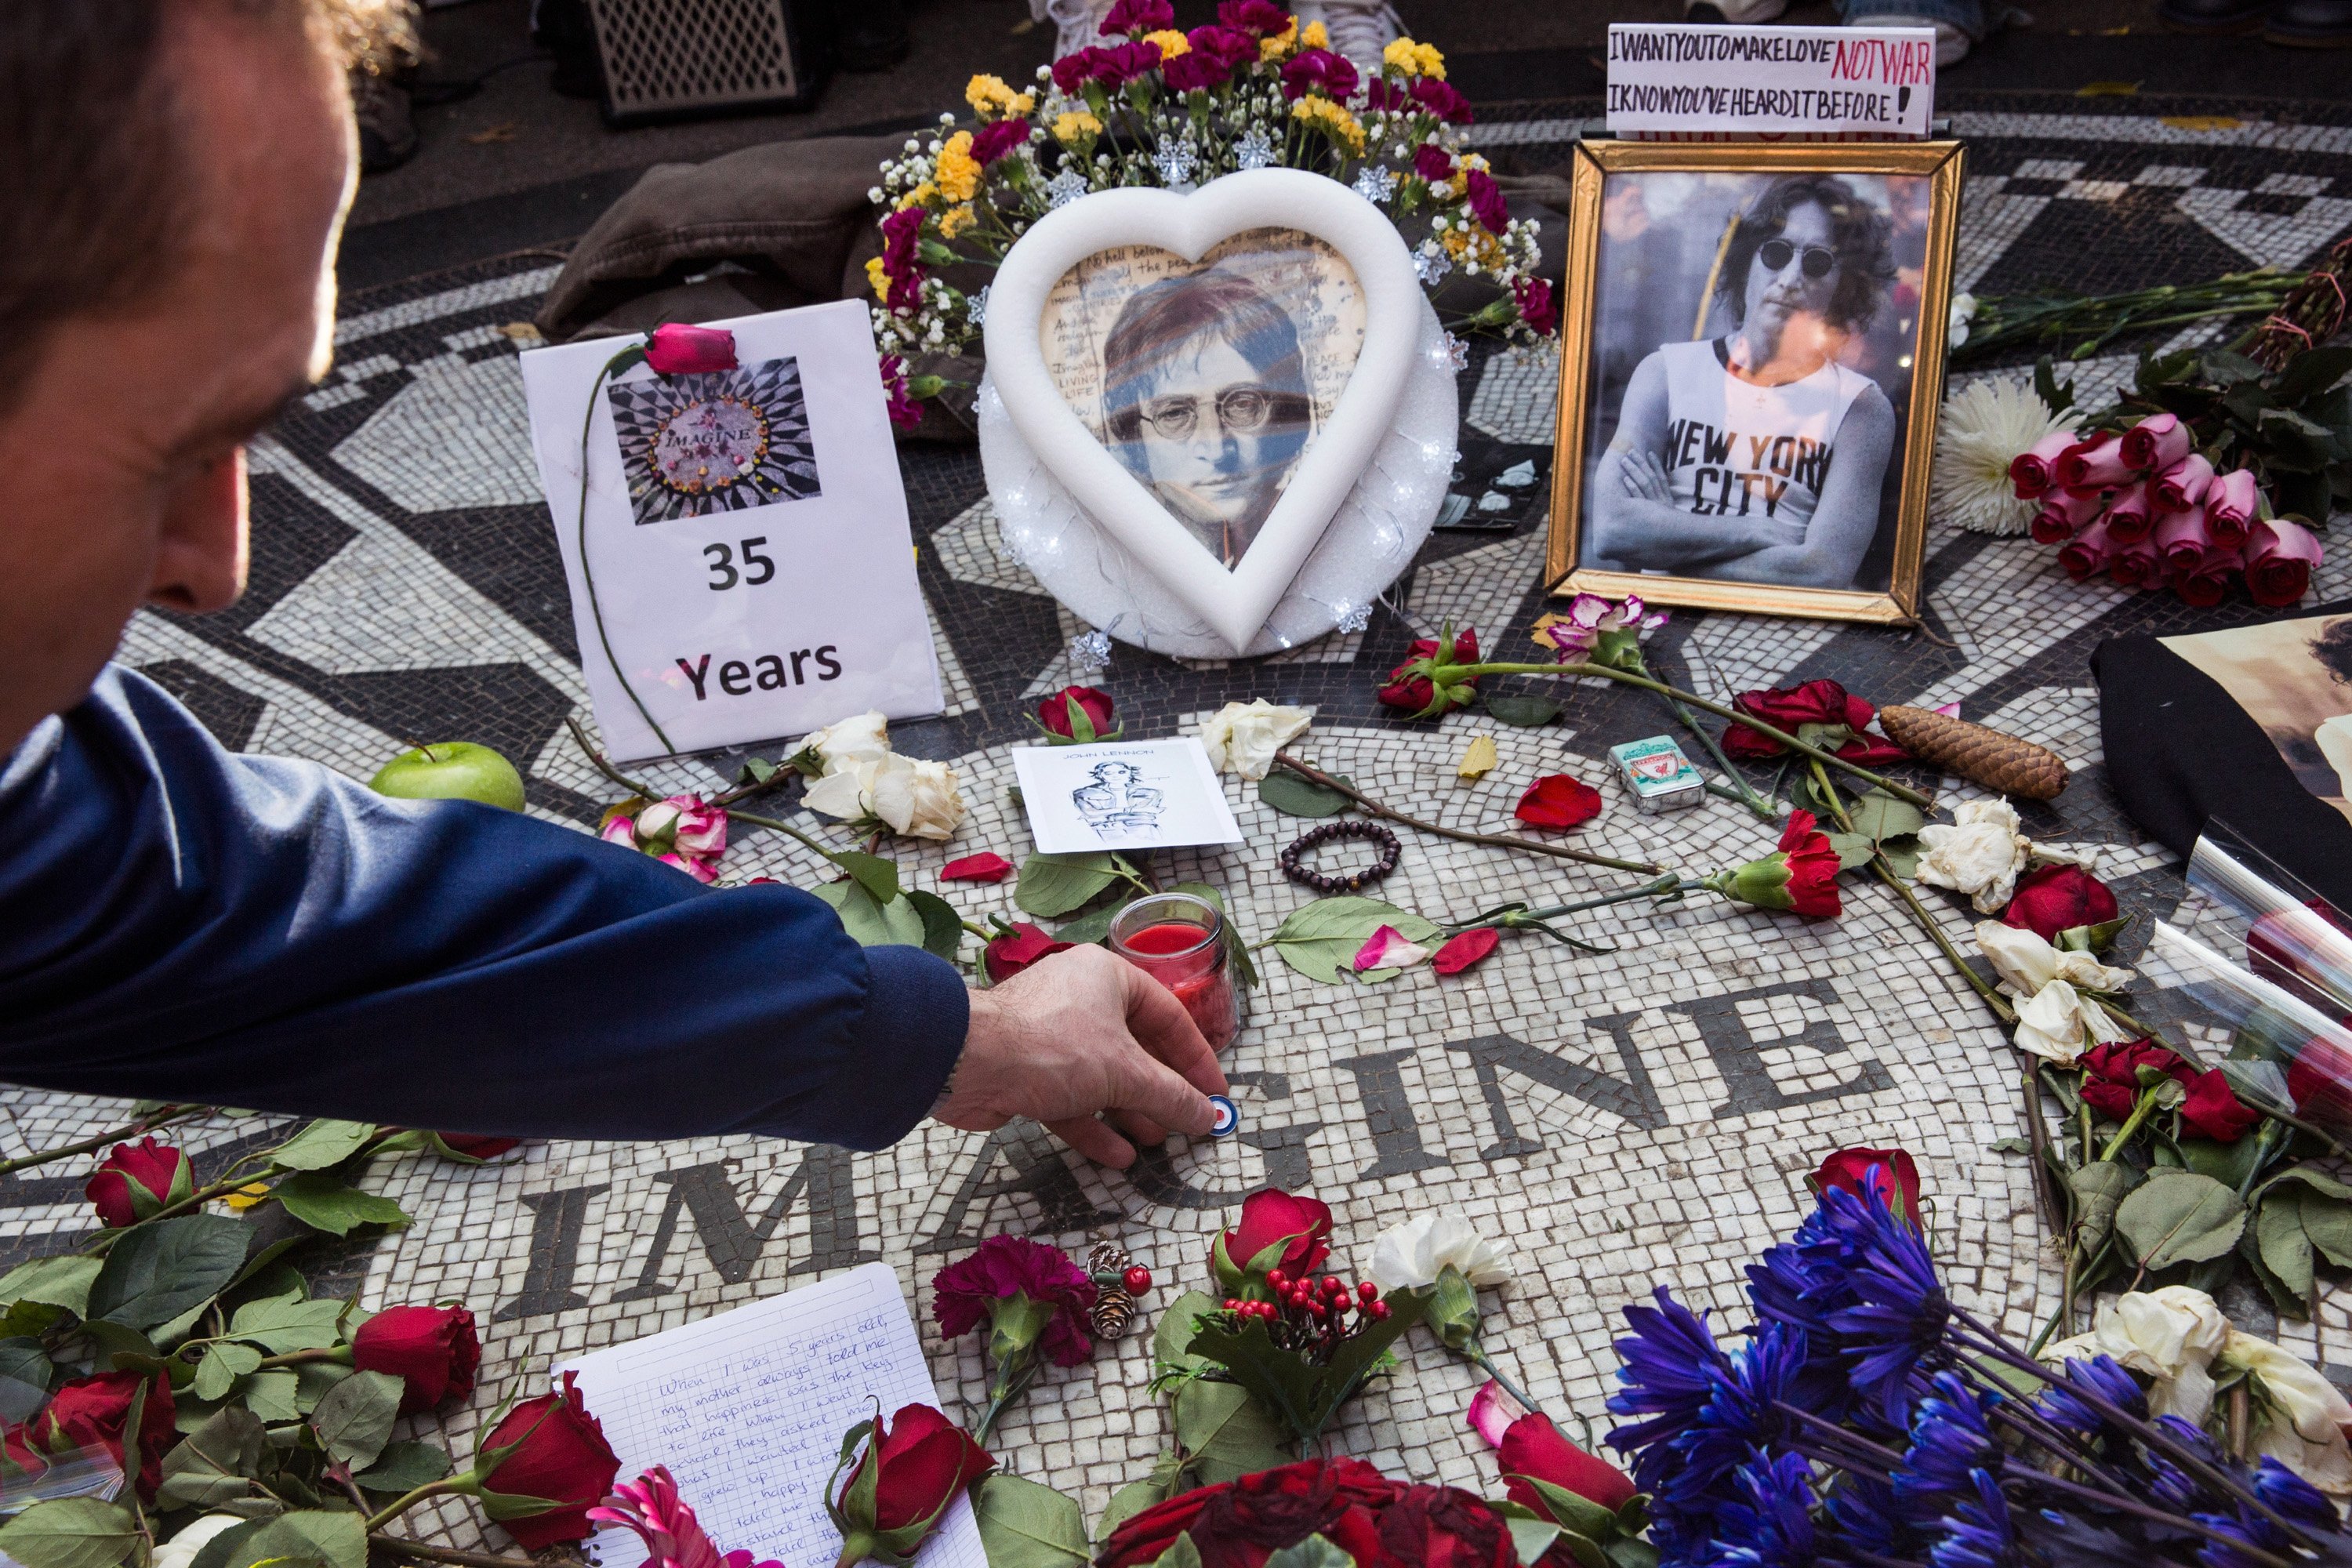 A John Lennon memorial